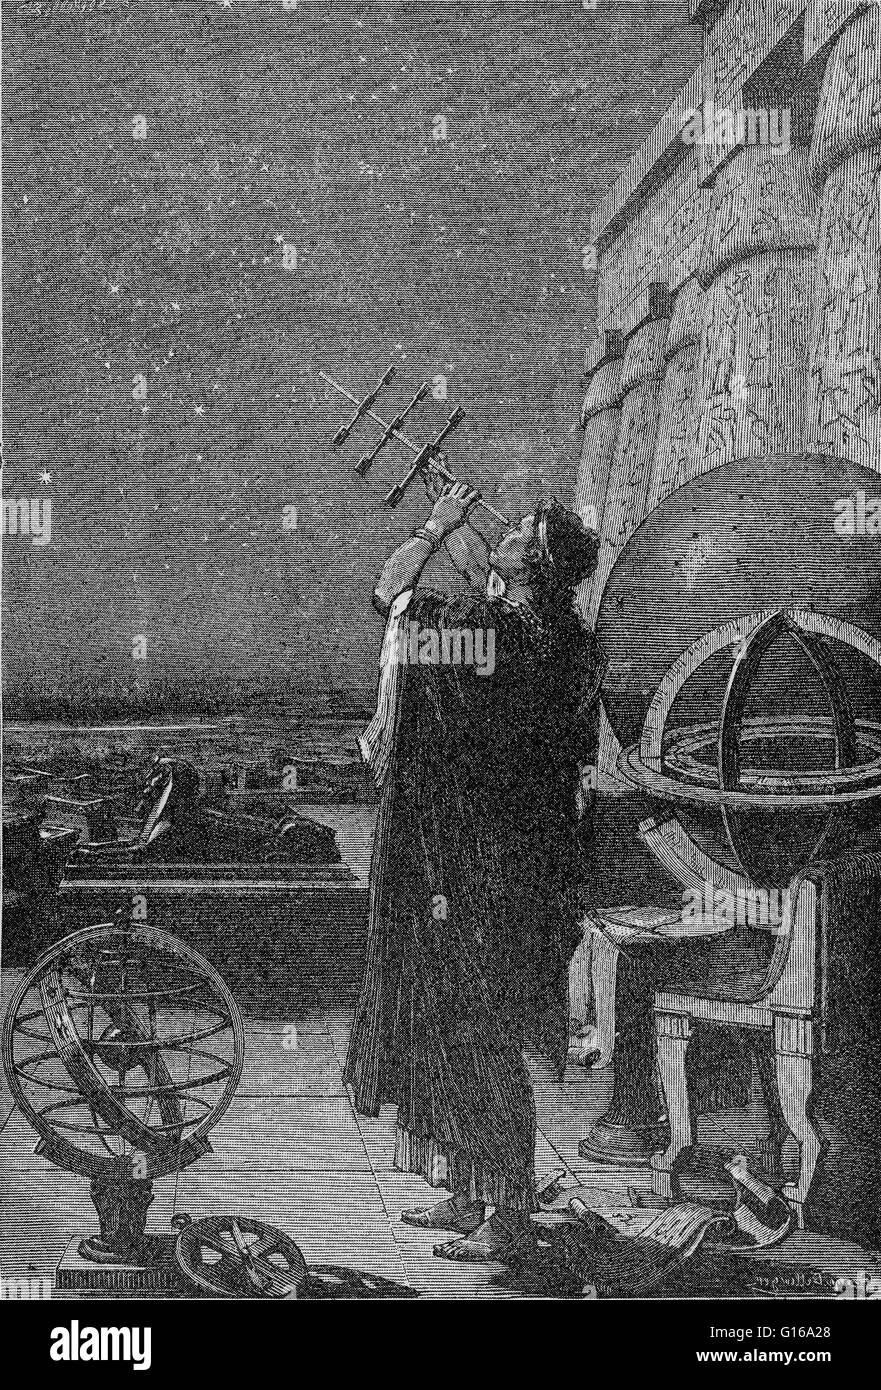 Alessandria osservatorio, II secolo A.C. - II secolo D.C. Astronomo usando un pre-puntamento telescopico strumento, eventualmente un cross-personale. In Egitto tolemaico, la tradizione egiziana si fuse con il Greco di astronomia e di astronomia babilonese, con la città di Alexa Foto Stock